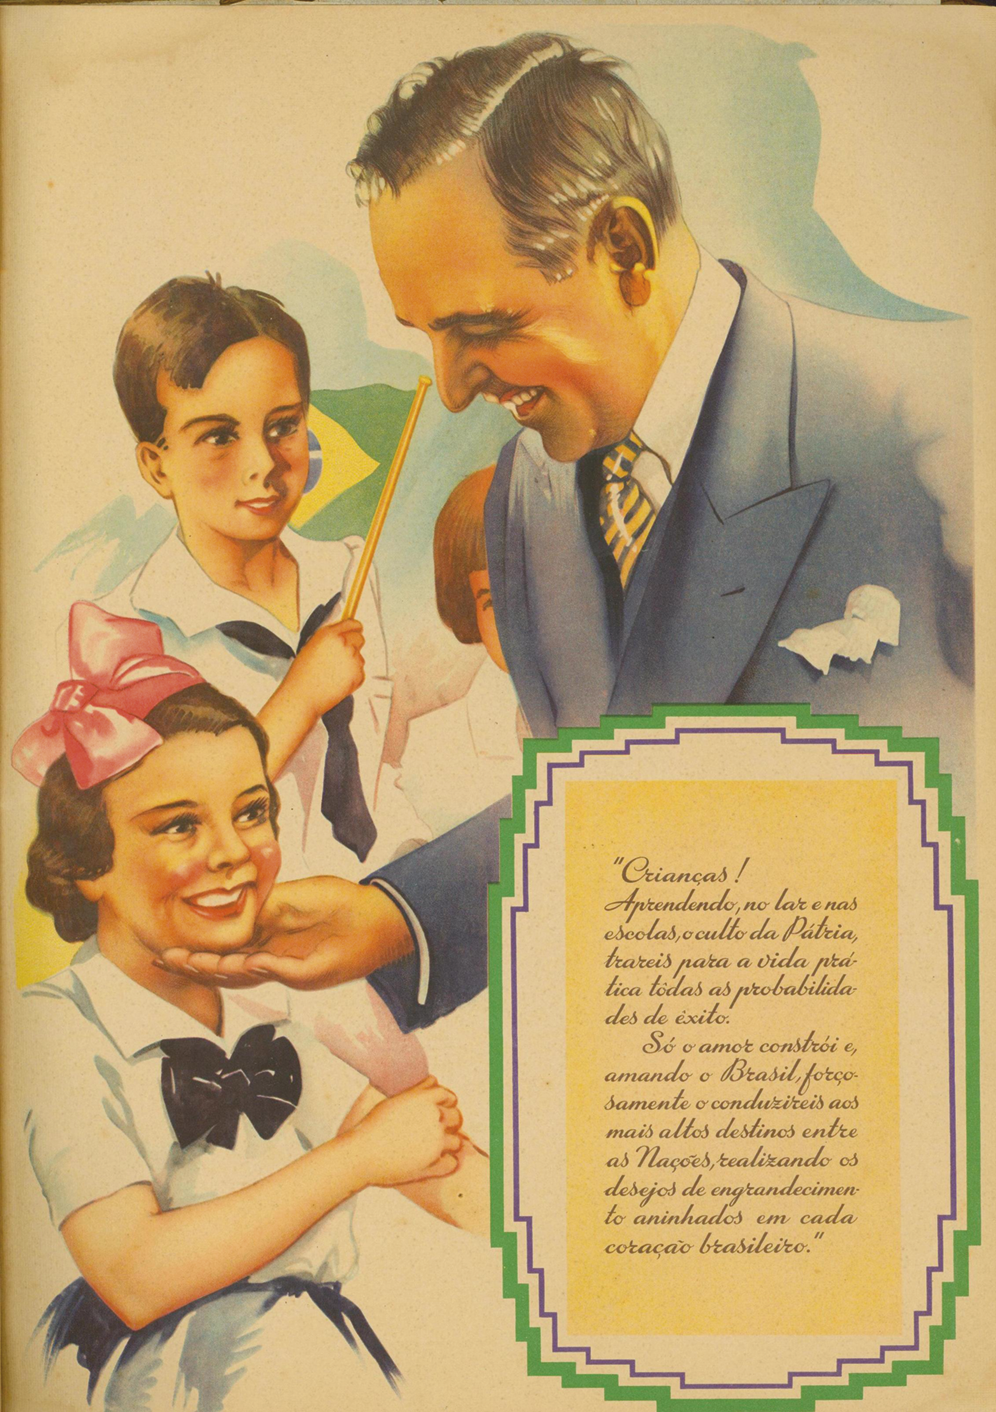 Ilustração. À esquerda, uma menina uniformizada com um laço na cabeça. Ao lado, um homem, usando terno azul, está com uma mão no queixo da menina e sorri. A menina também sorri. Ao fundo, um menino uniformizado segurando com a mão a bandeira do Brasil. No canto inferior direito, caixa com texto.